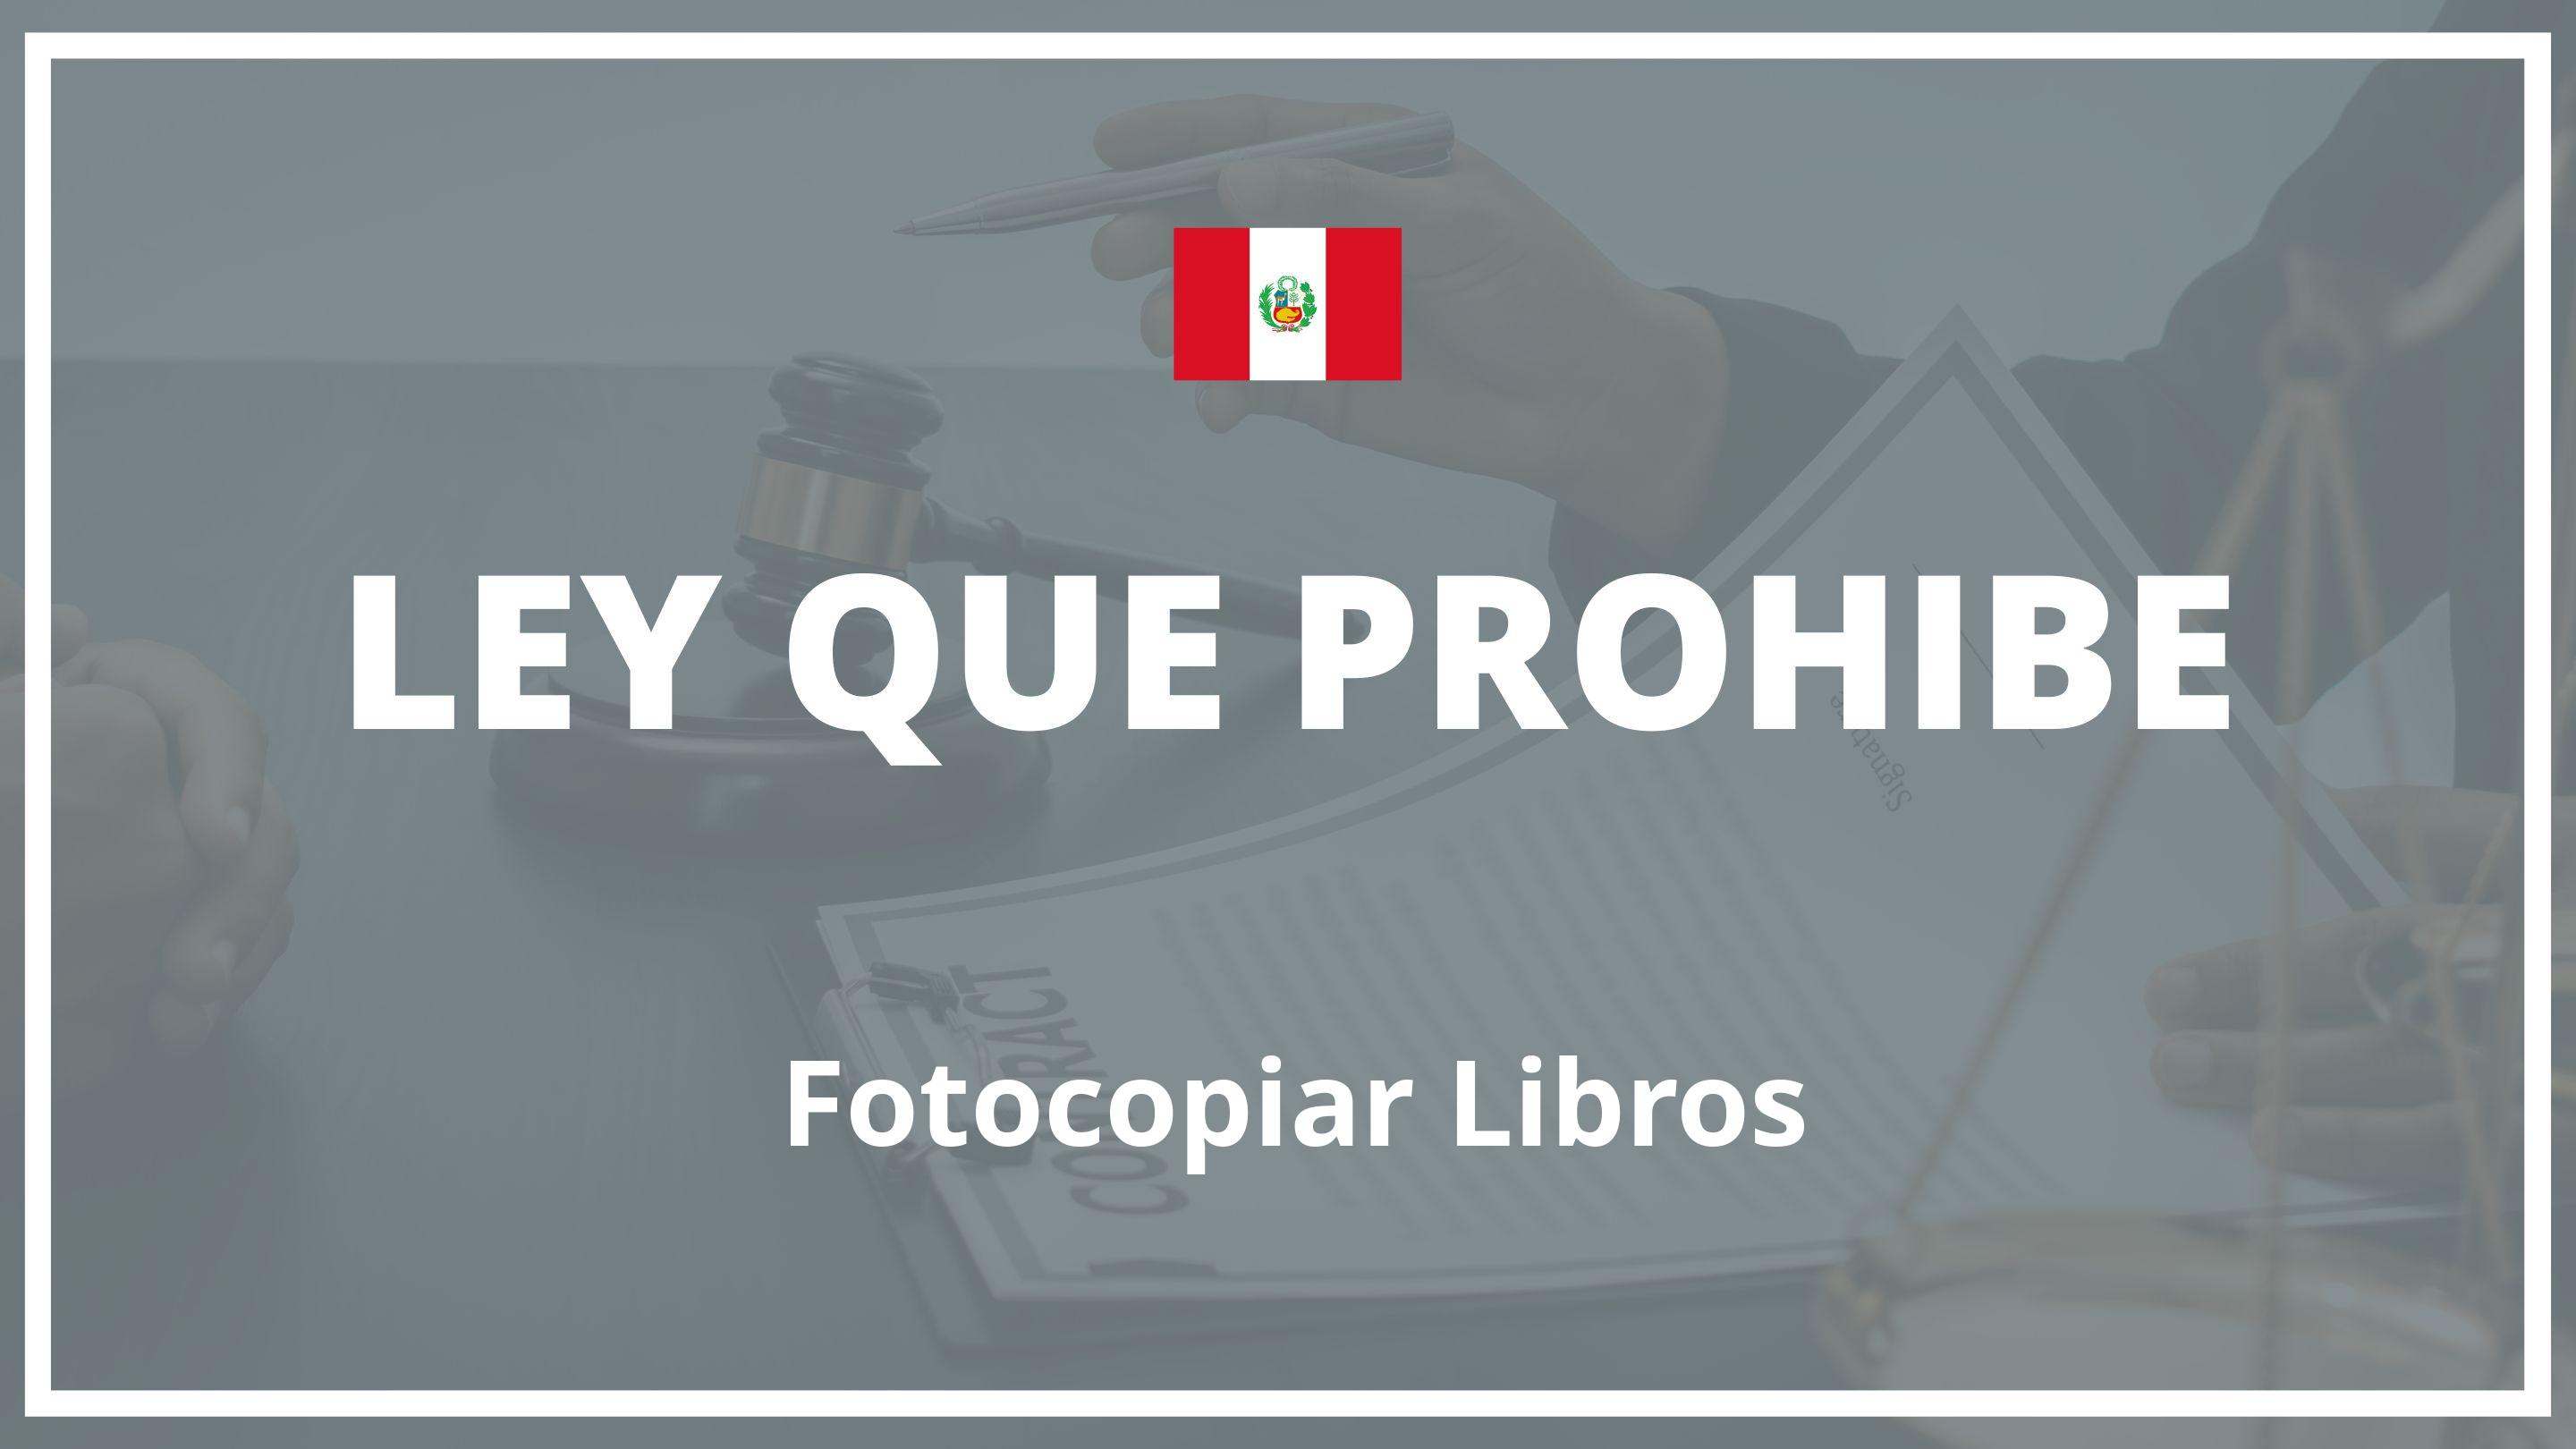 Ley que prohibe fotocopiar libros Peru